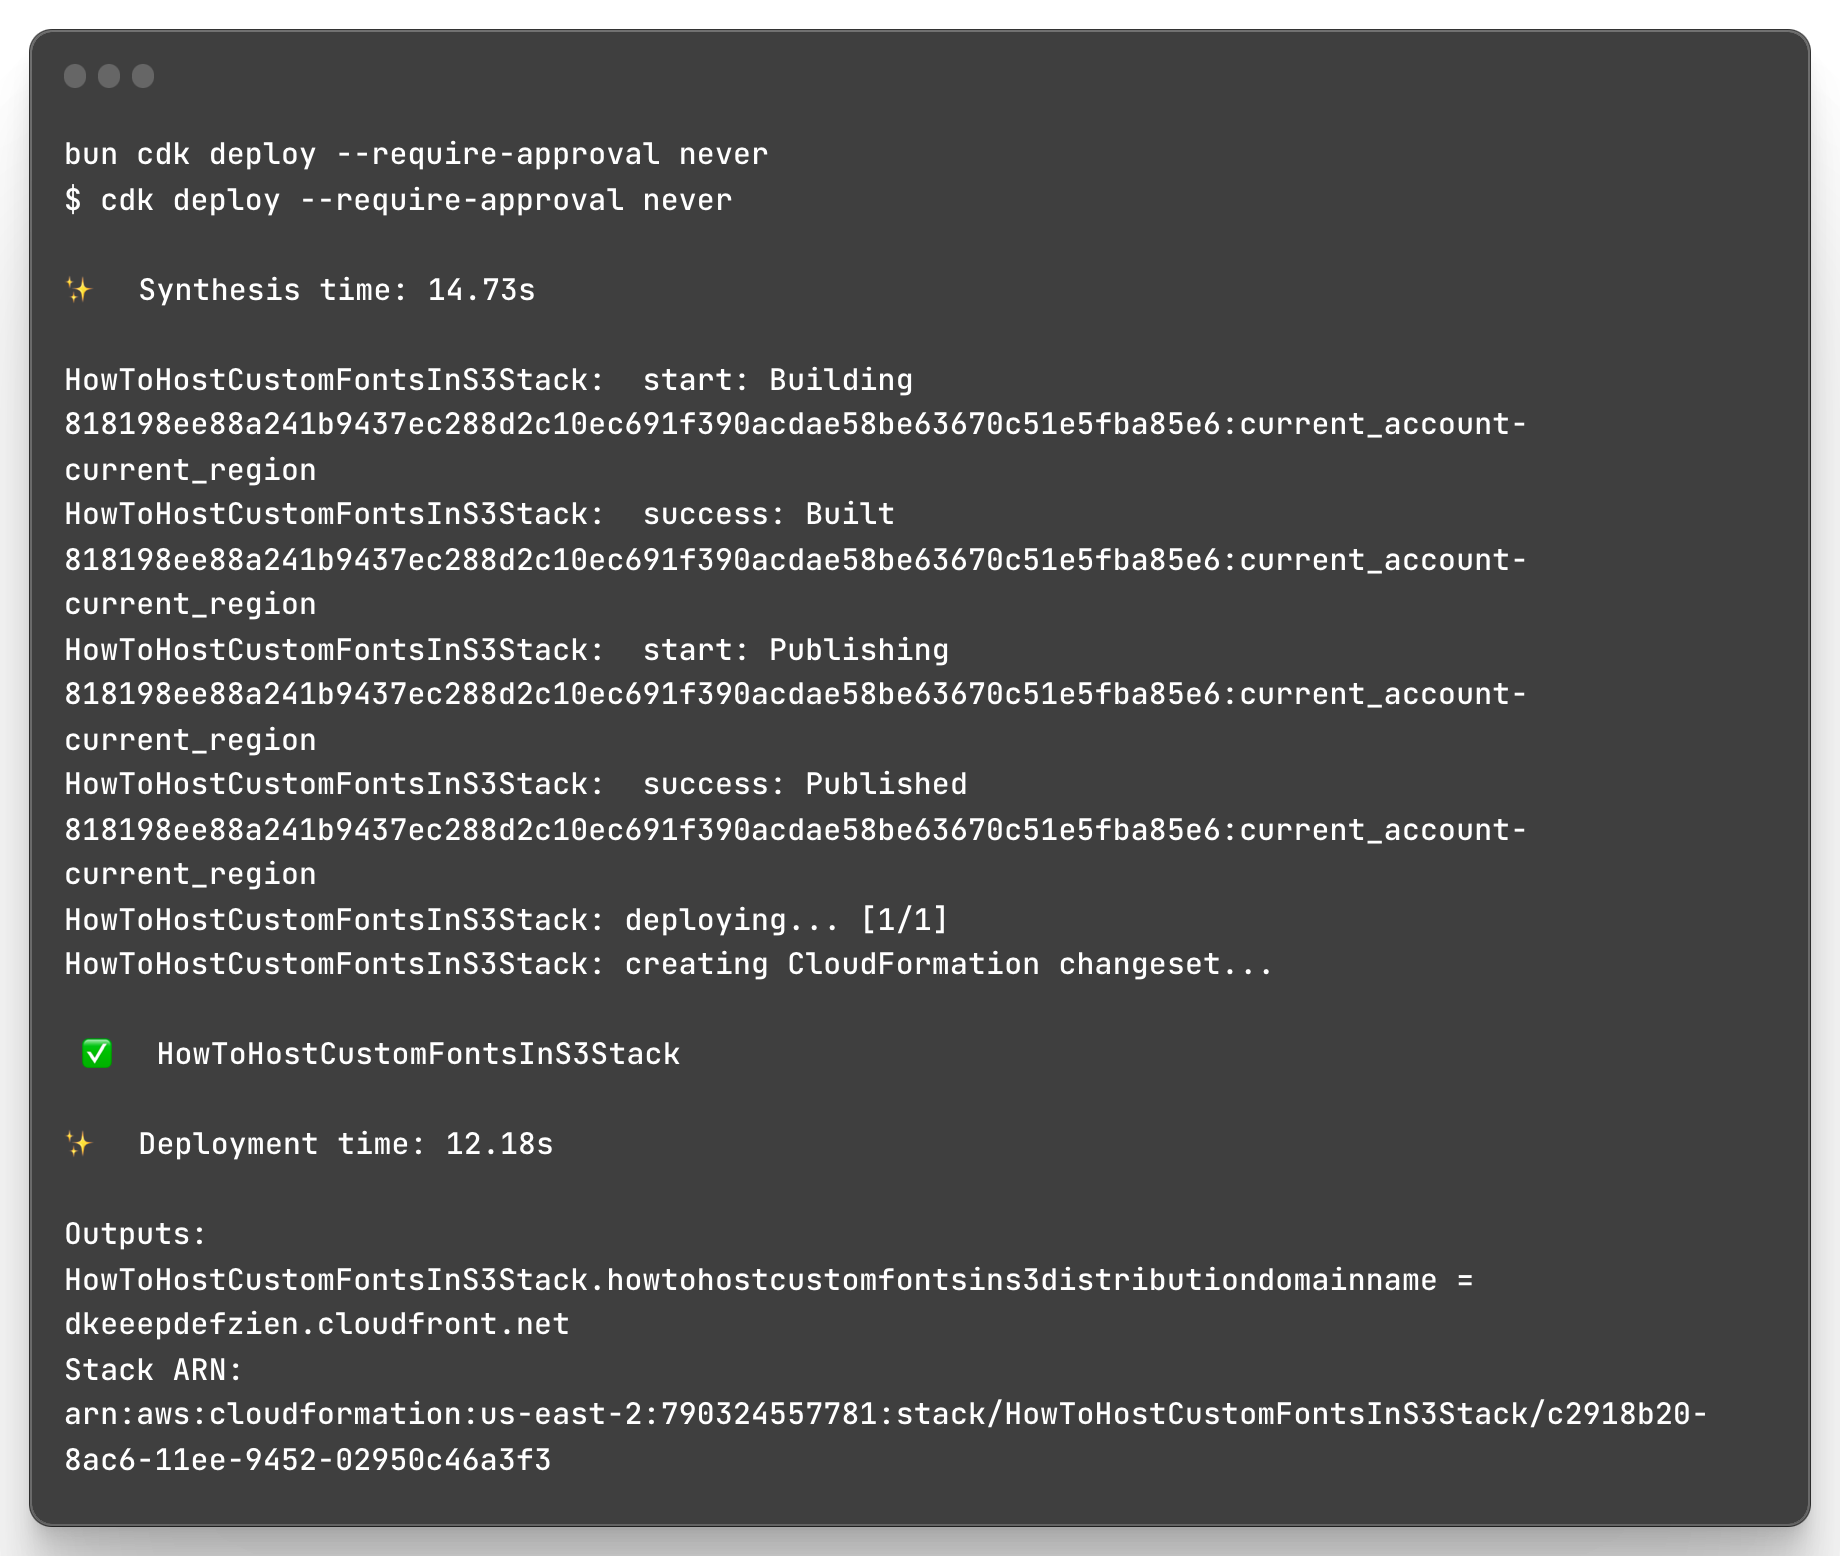 Image of terminal output after running bun cdk deploy